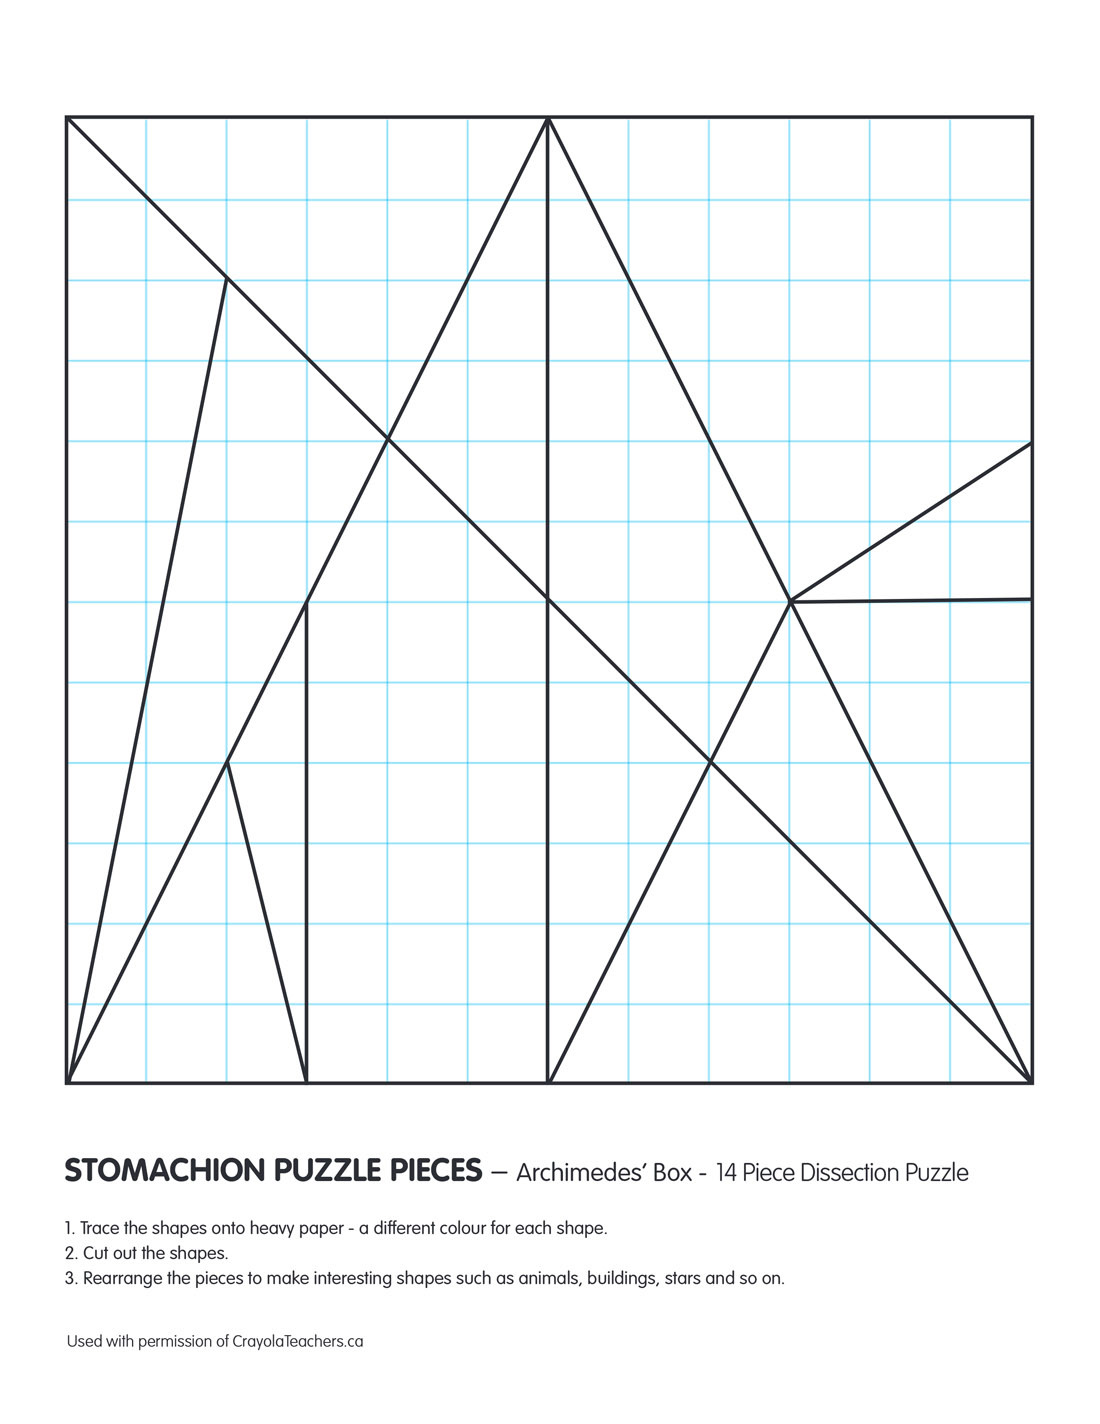 Stomachion Puzzle Pieces